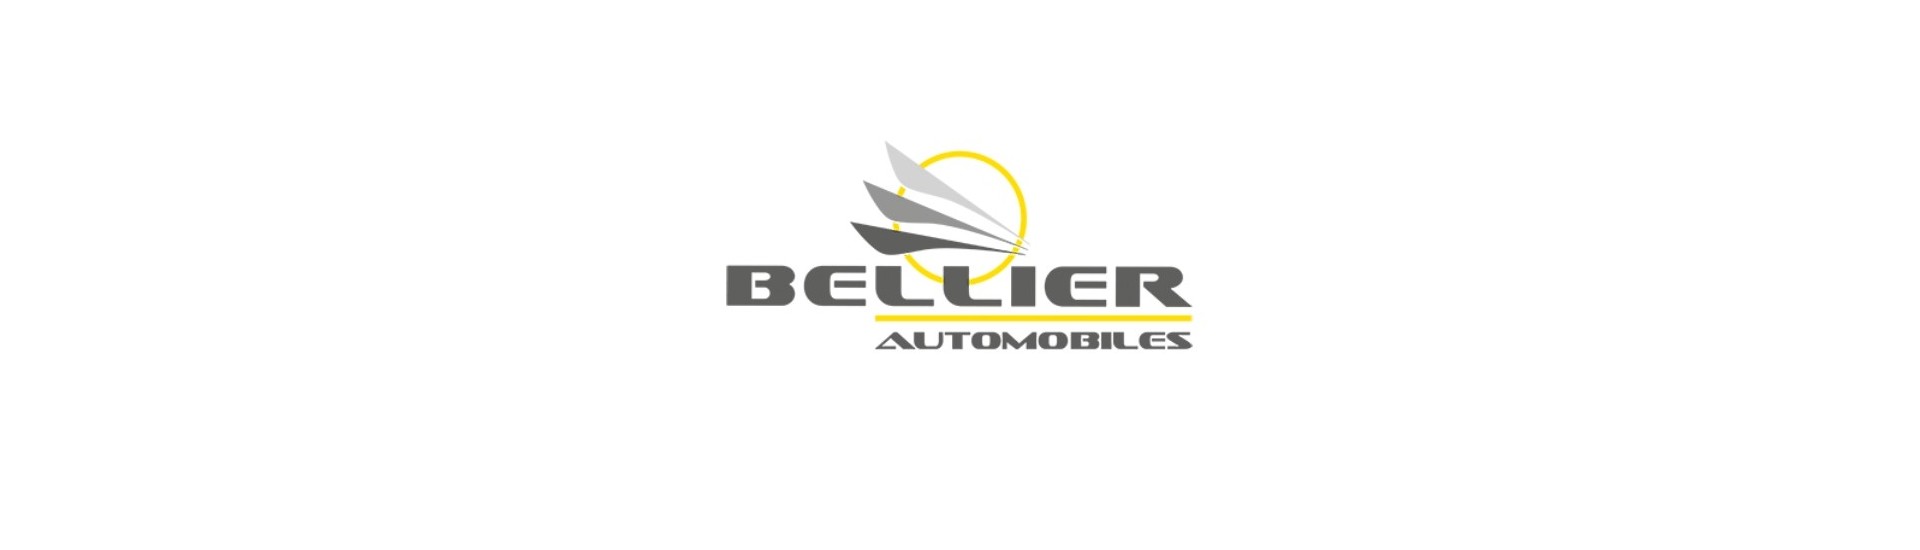 Logo und Anhänger zum besten Preis für Auto ohne Lizenz Bellier